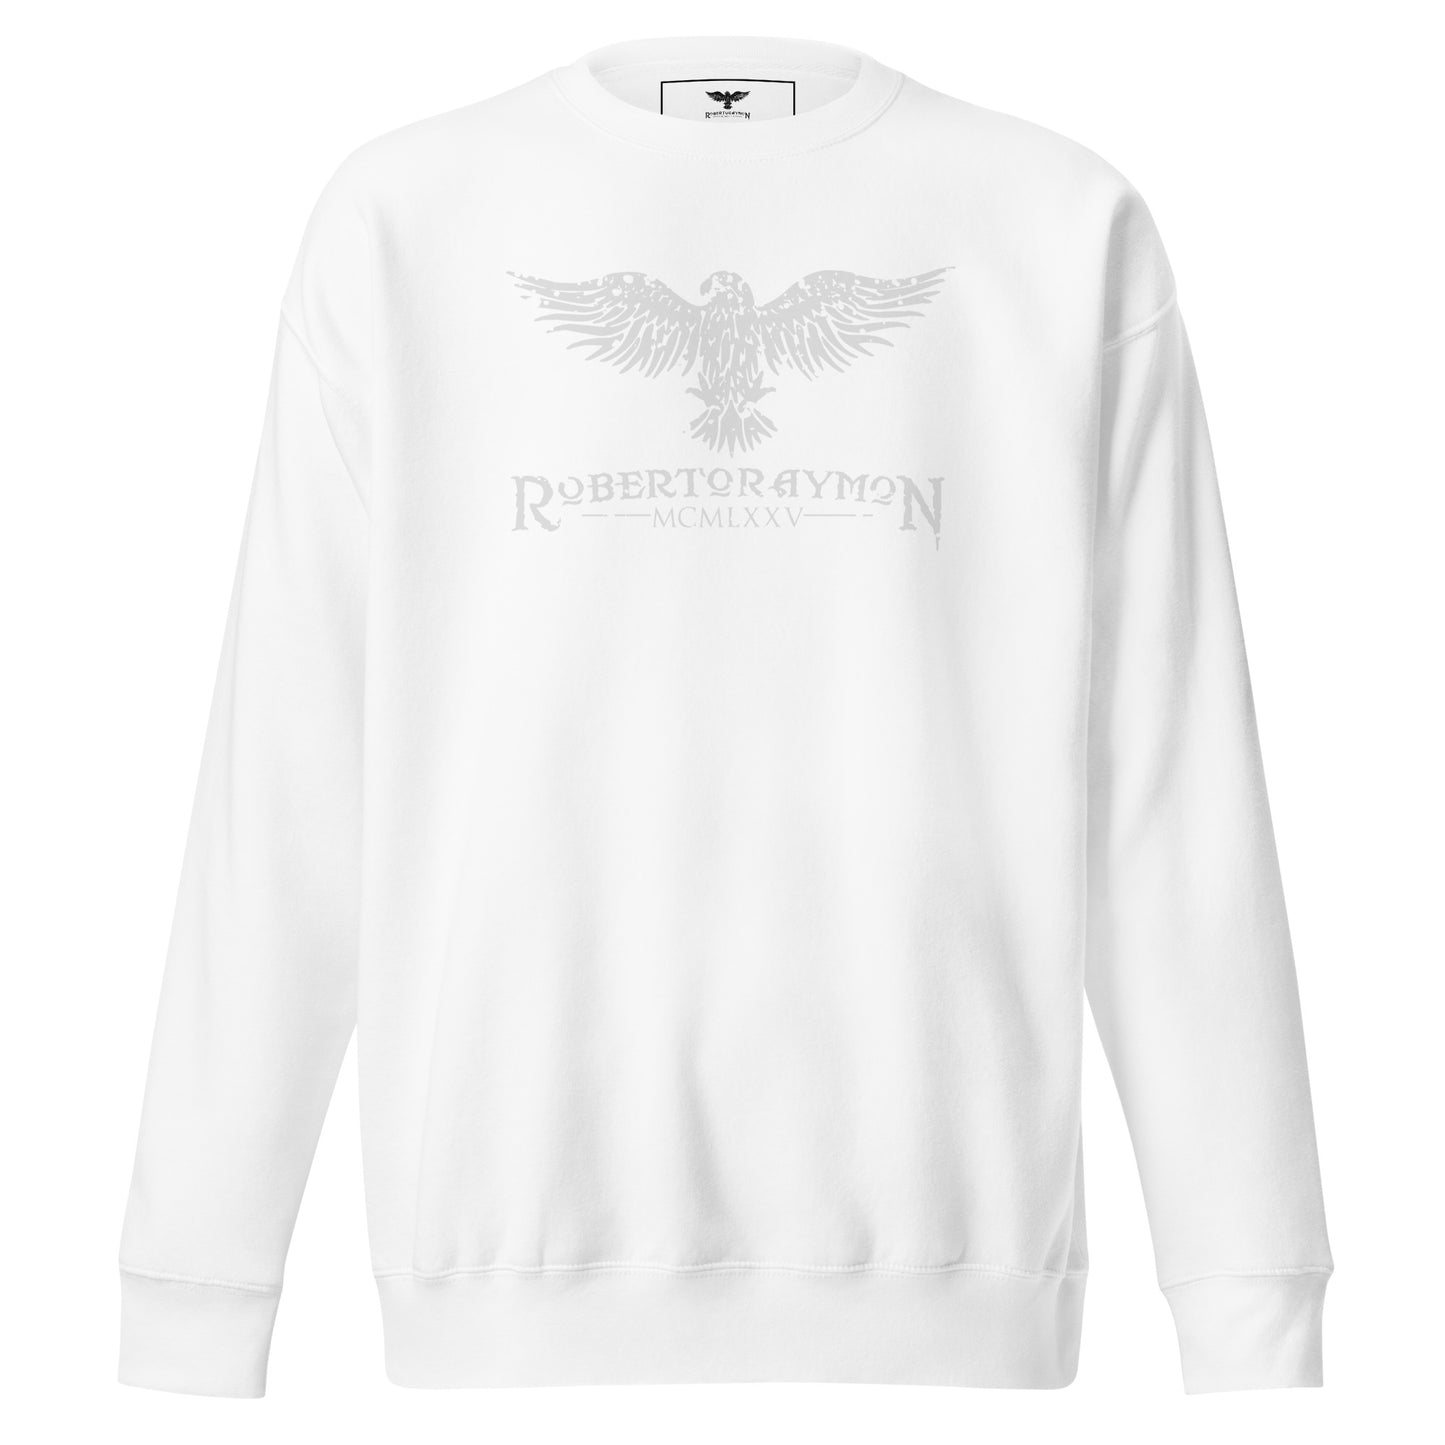 Roberto Raymon | Premium Sweatshirt